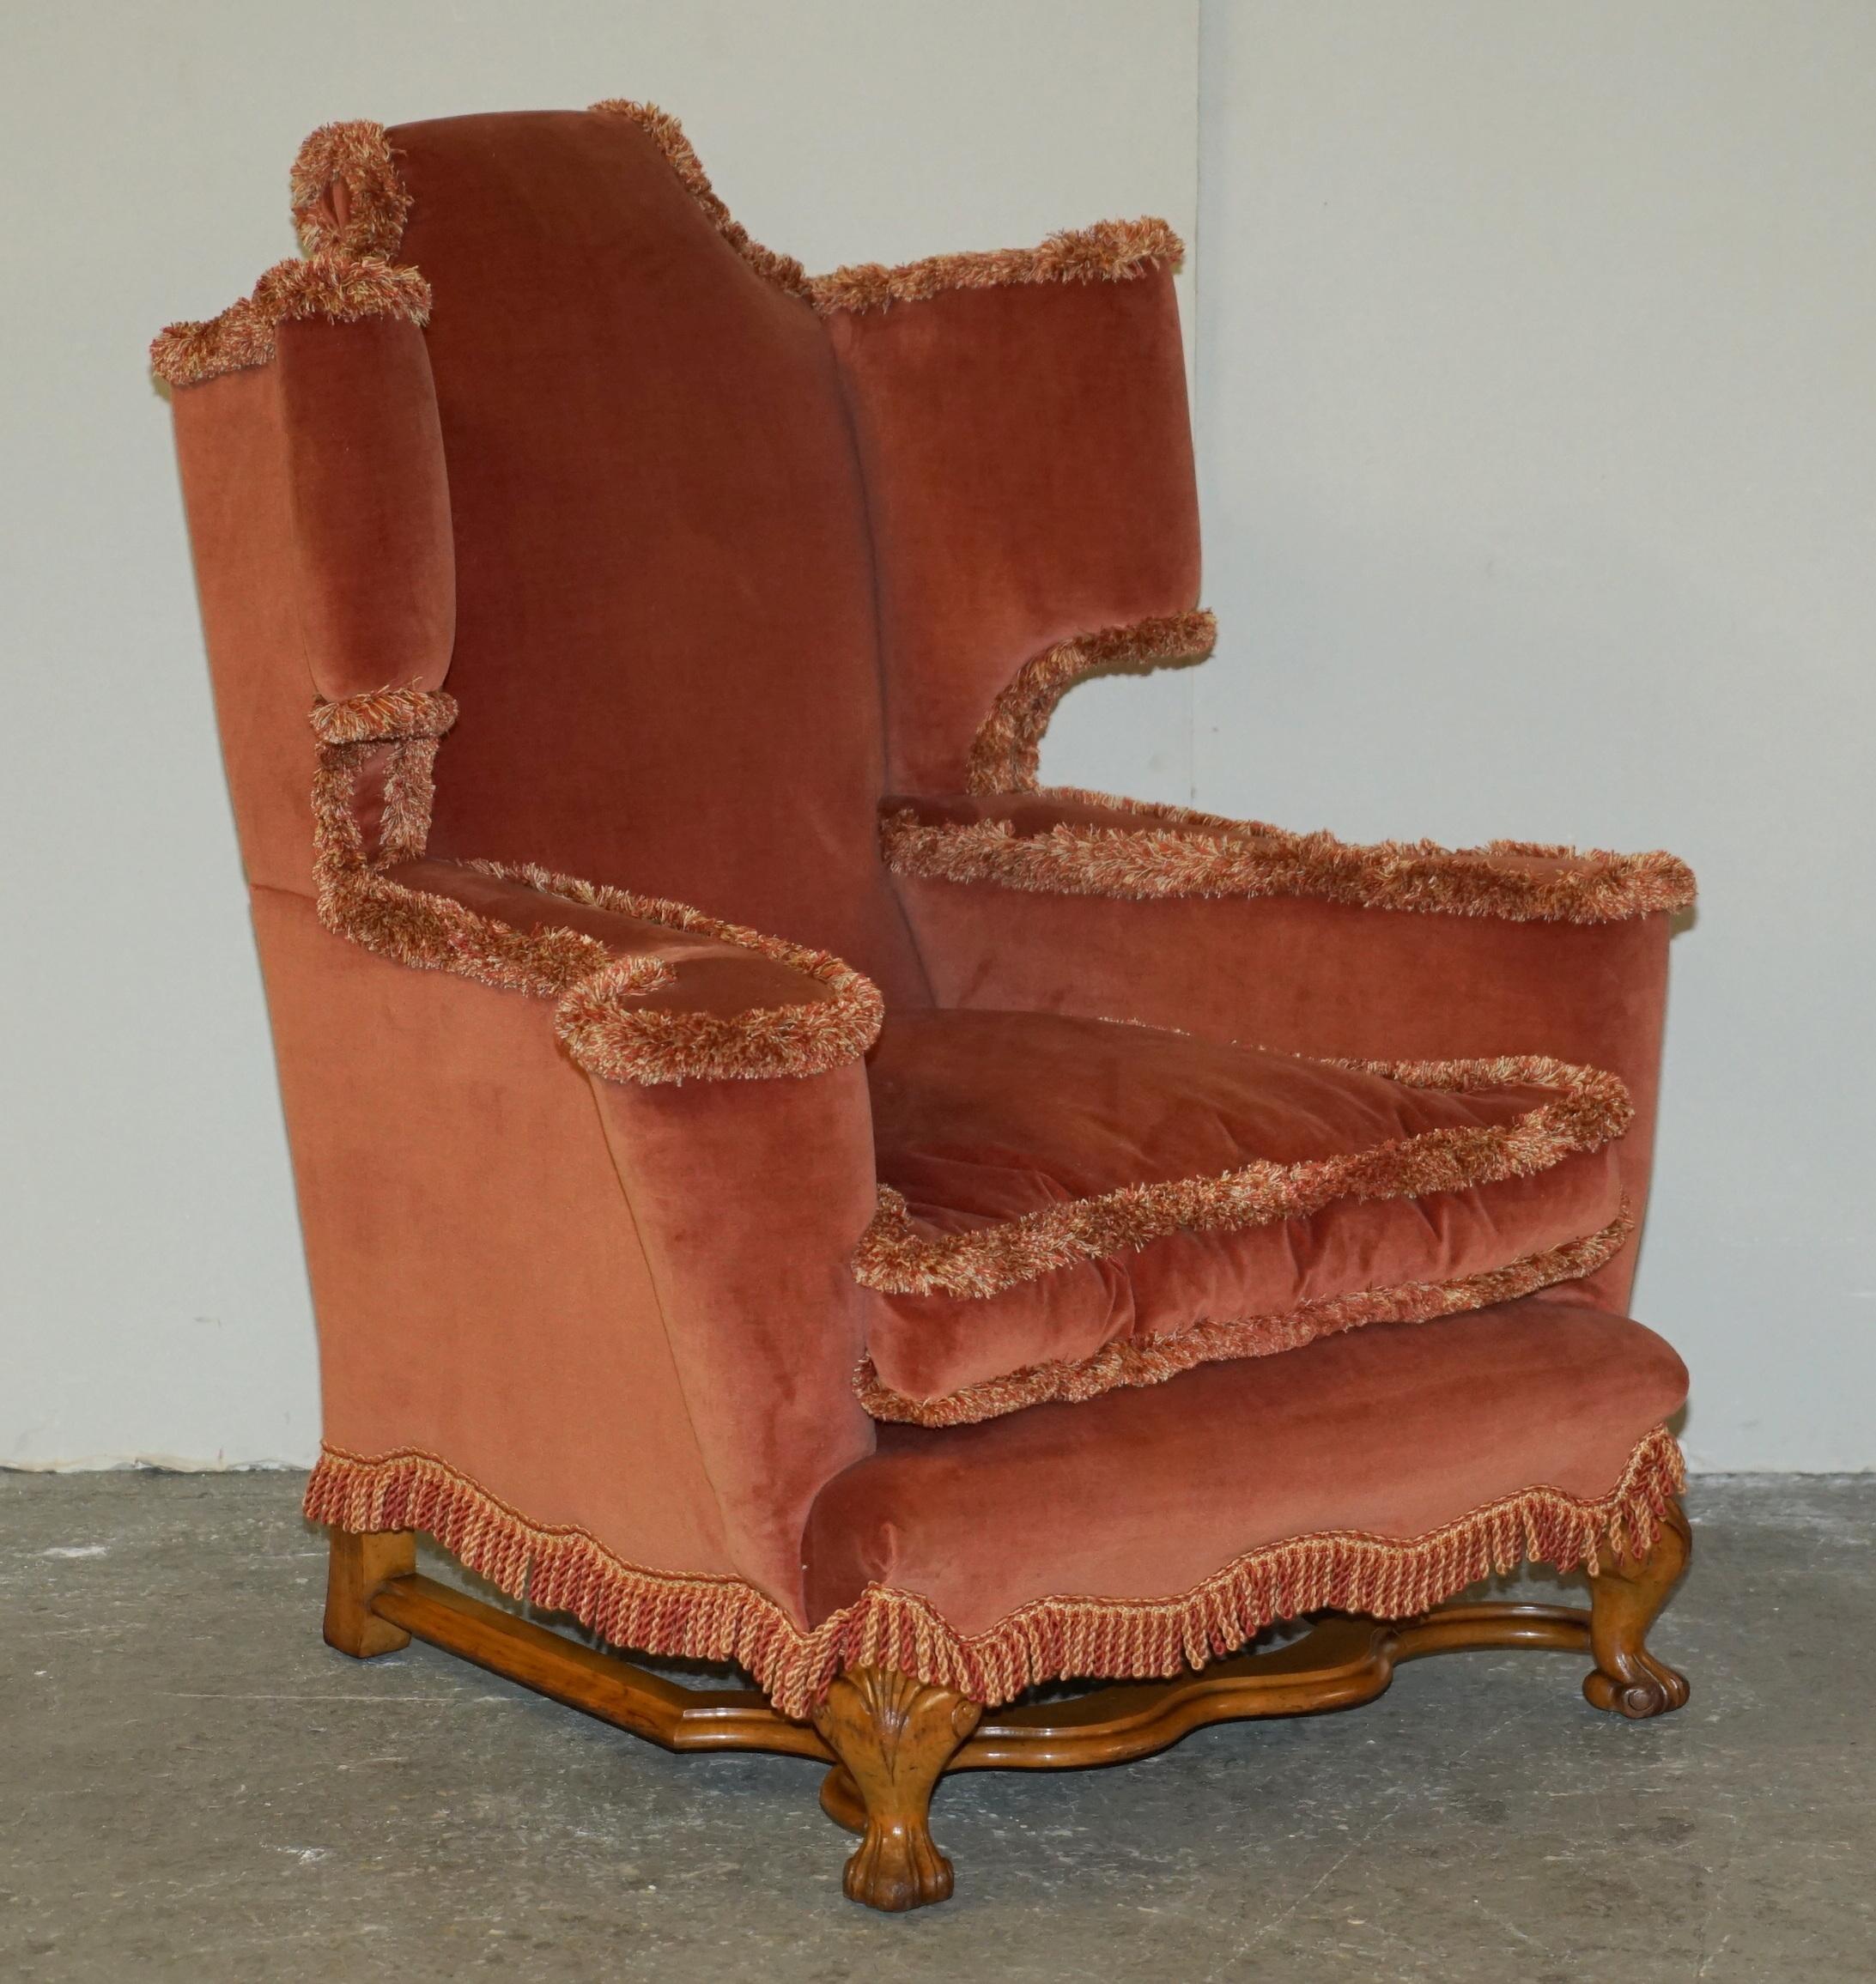 Royal House Antiques

The House Antiques a le plaisir d'offrir à la vente cette paire de fauteuils trône italiens / carolingiens anciens avec des bases ornementales sculptées et des accoudoirs plats de style William Morris.

Veuillez noter que les